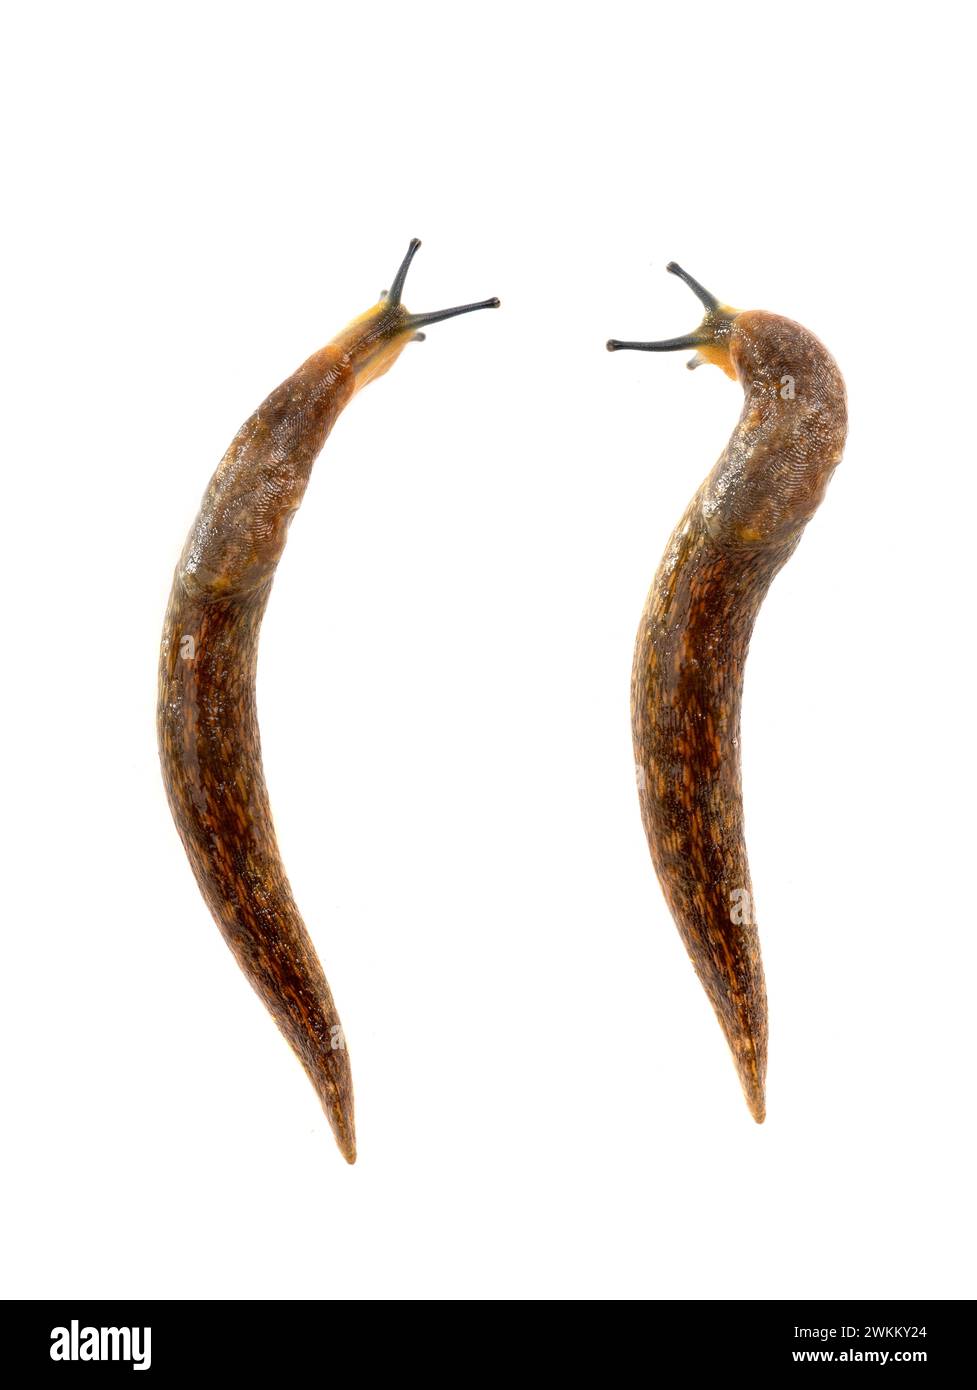 two semi-slugs isolated on white background. Stock Photo